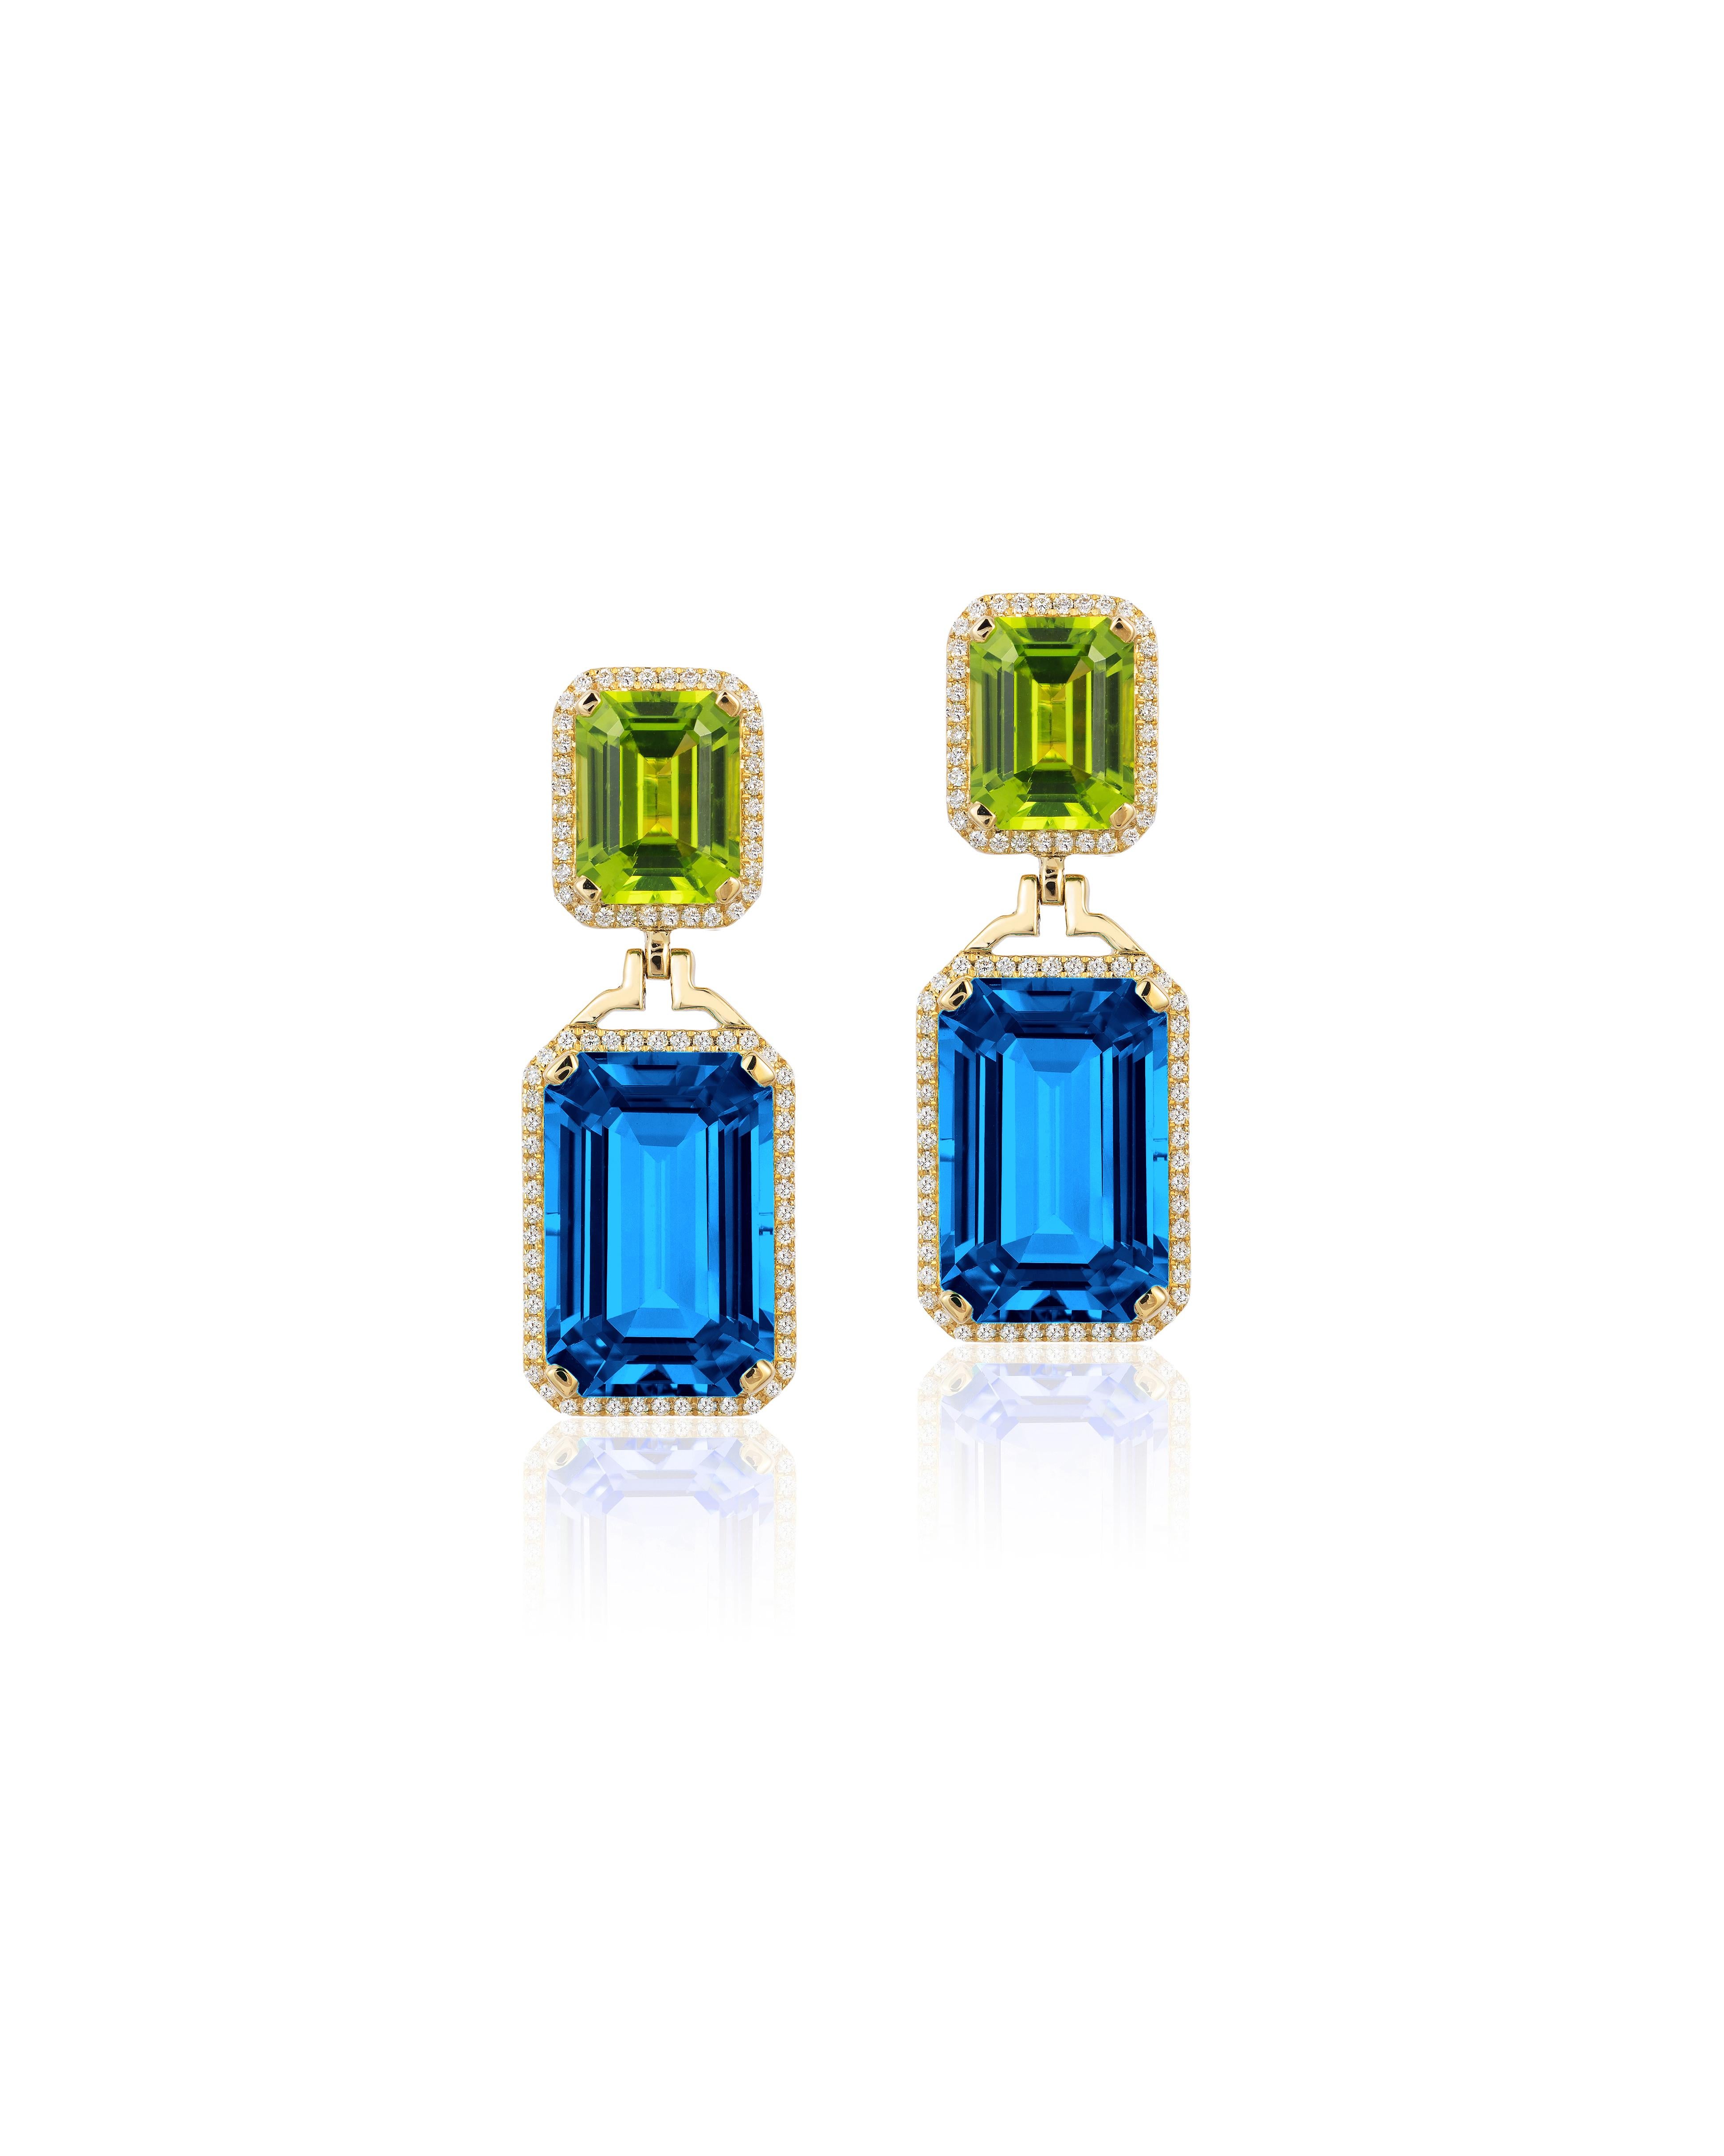 emerald cut topaz earrings